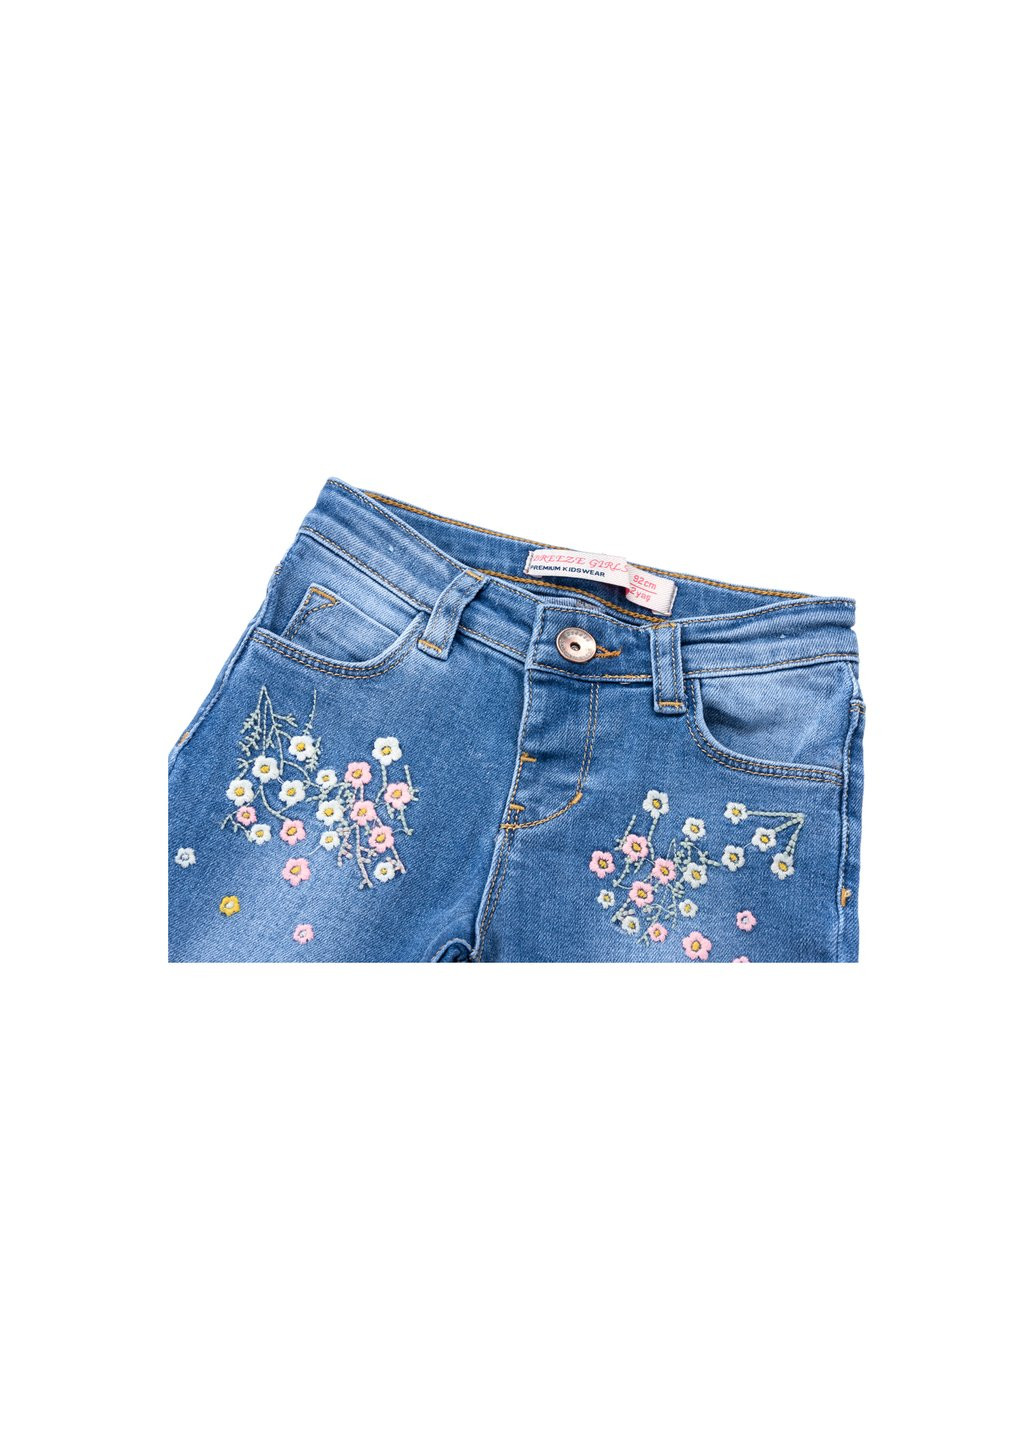 Комбинированные демисезонные джинсы джинсовые с цветочками (oz-17703-74g-jeans) Breeze